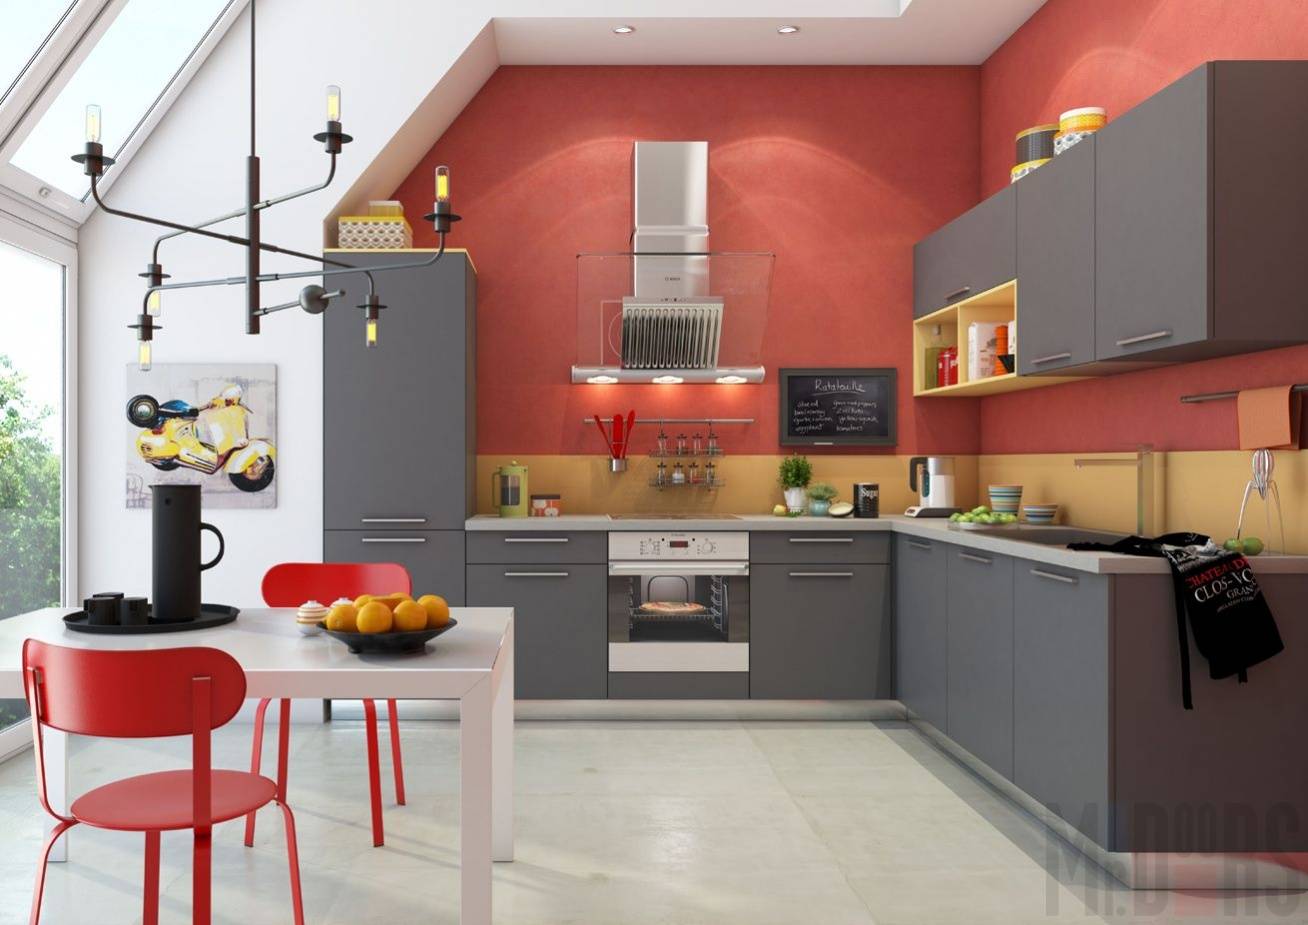 Мебель для кухни - какую выбрать? обзор новинок дизайна, фото, современные идеи в интерьере кухни